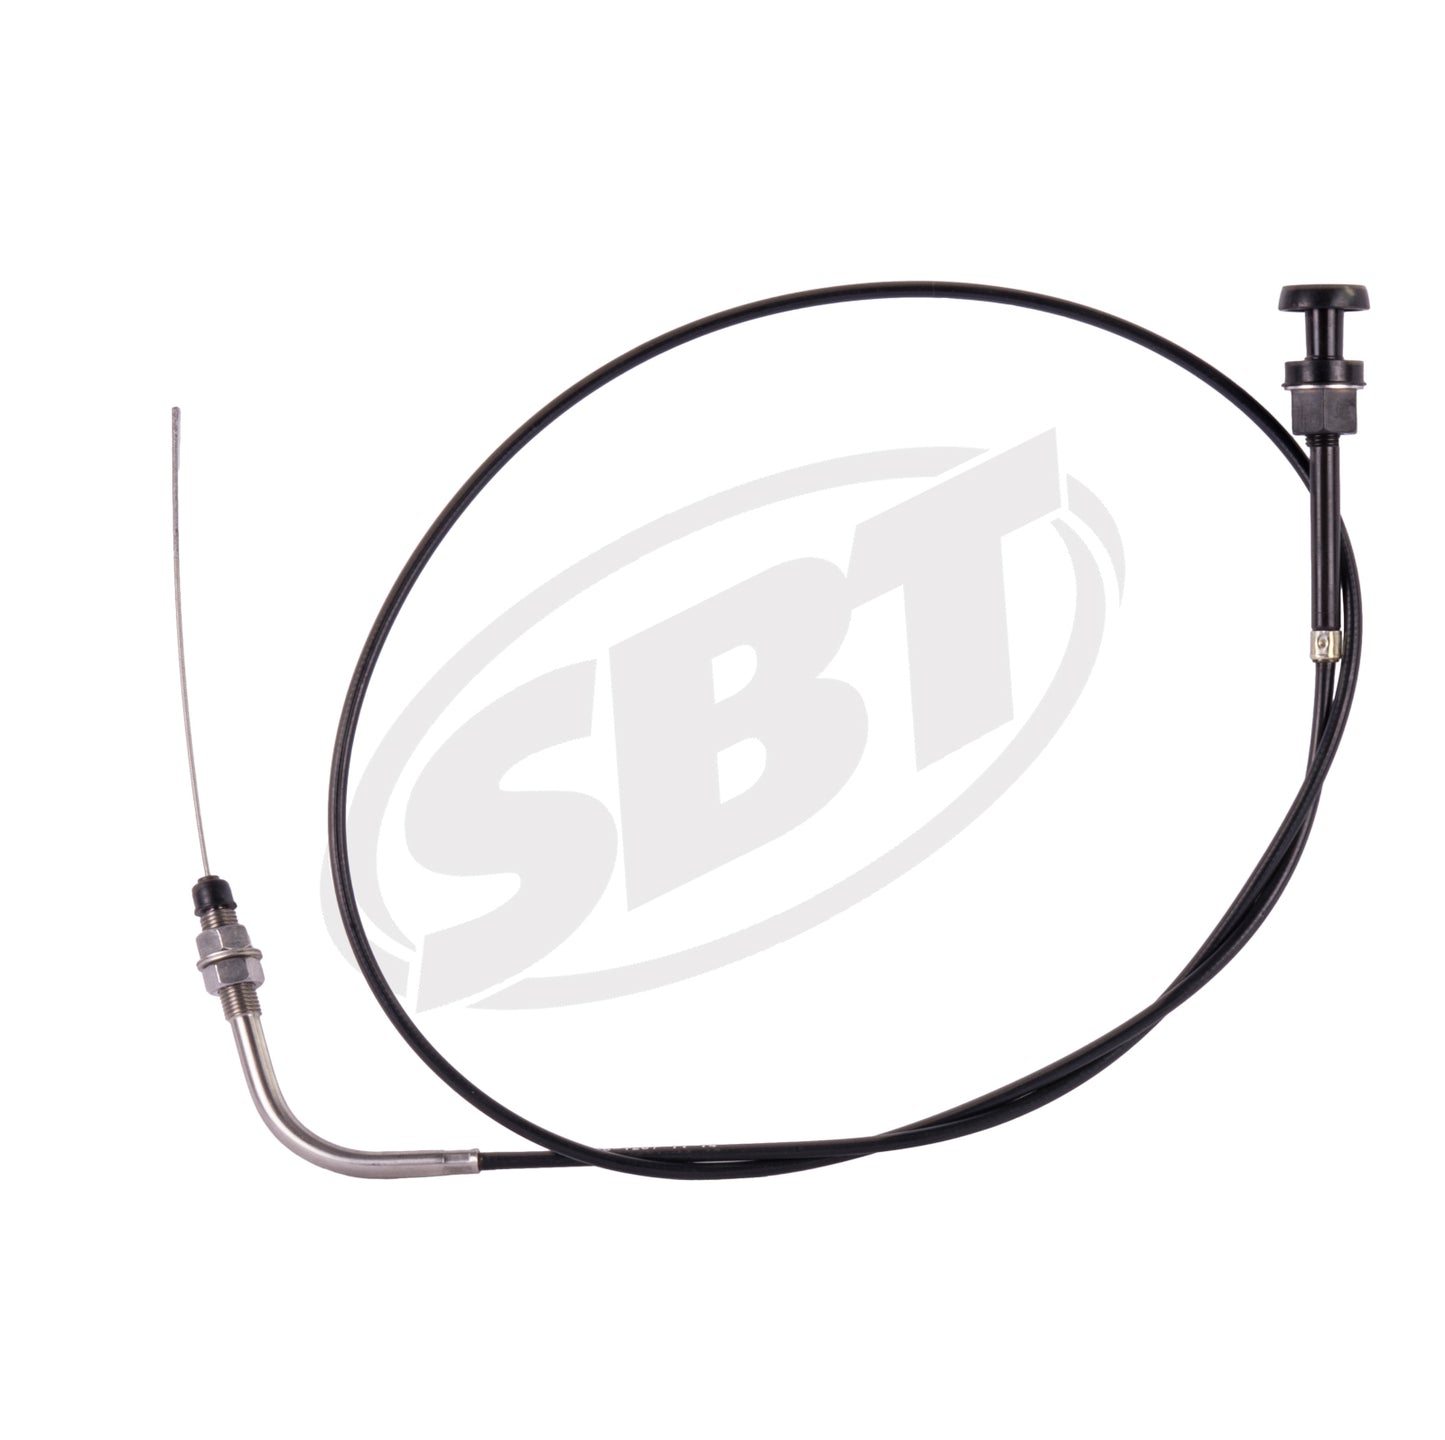 SBT Kawasaki Choke Cable 1100 STX /1100 ZXI /900 STX /900 STS 59401-3717 1997 1998 1999 2000 2001 2002 2003